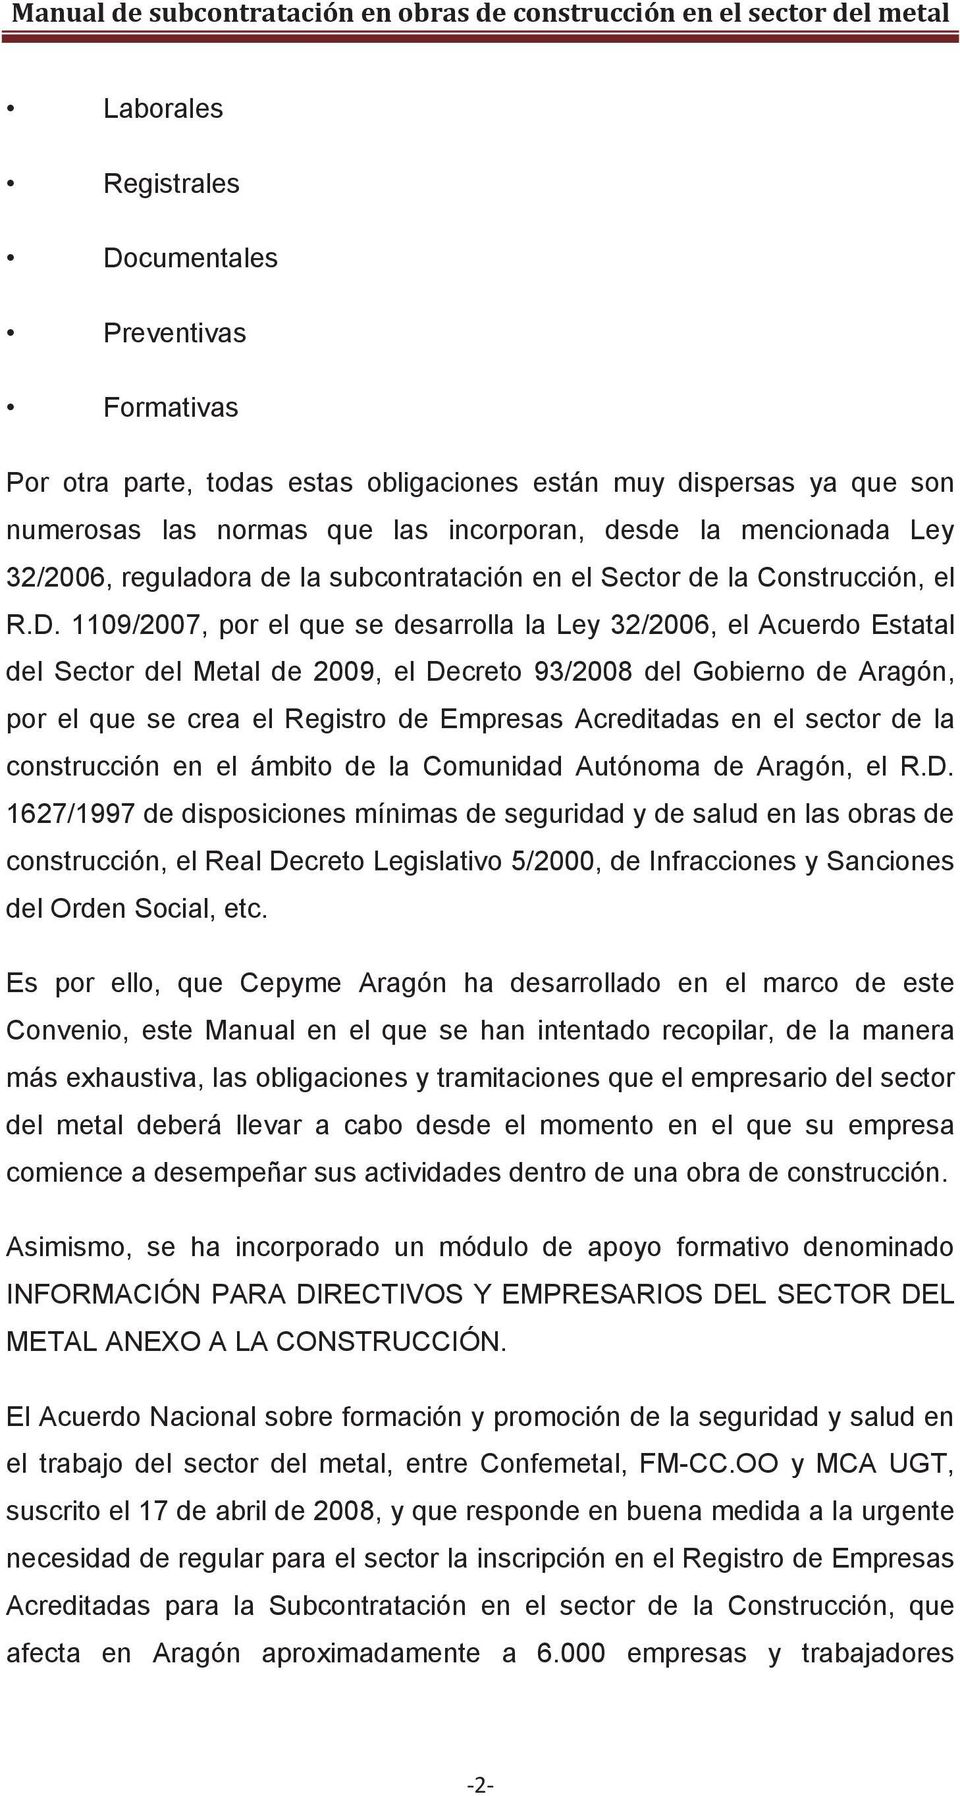 1109/2007, por el que se desarrolla la Ley 32/2006, el Acuerdo Estatal del Sector del Metal de 2009, el Decreto 93/2008 del Gobierno de Aragón, por el que se crea el Registro de Empresas Acreditadas